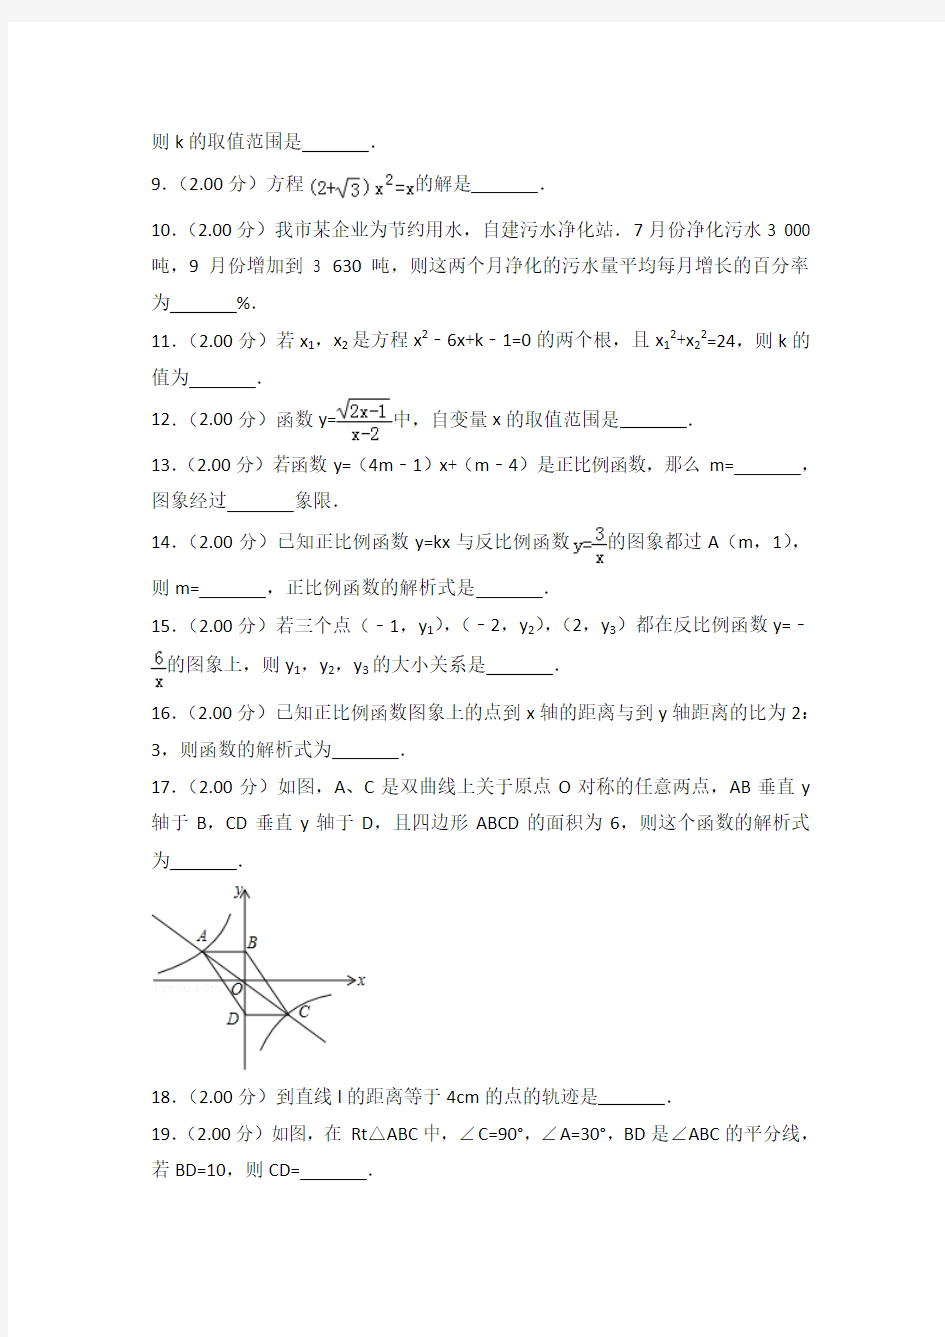 2014-2015年上海市田家炳中学八年级(上)期中数学试卷(解析版)